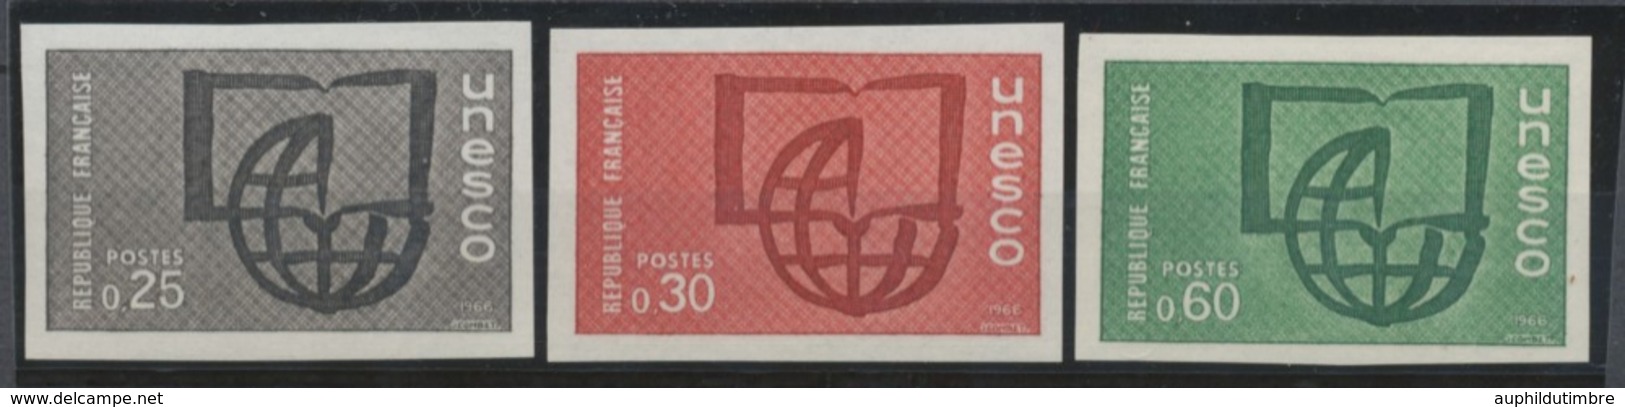 1966 France SERVICES Du N°36 à 38 Non Dentelés Neuf Luxe** COTE 215€ D1622 - Unclassified